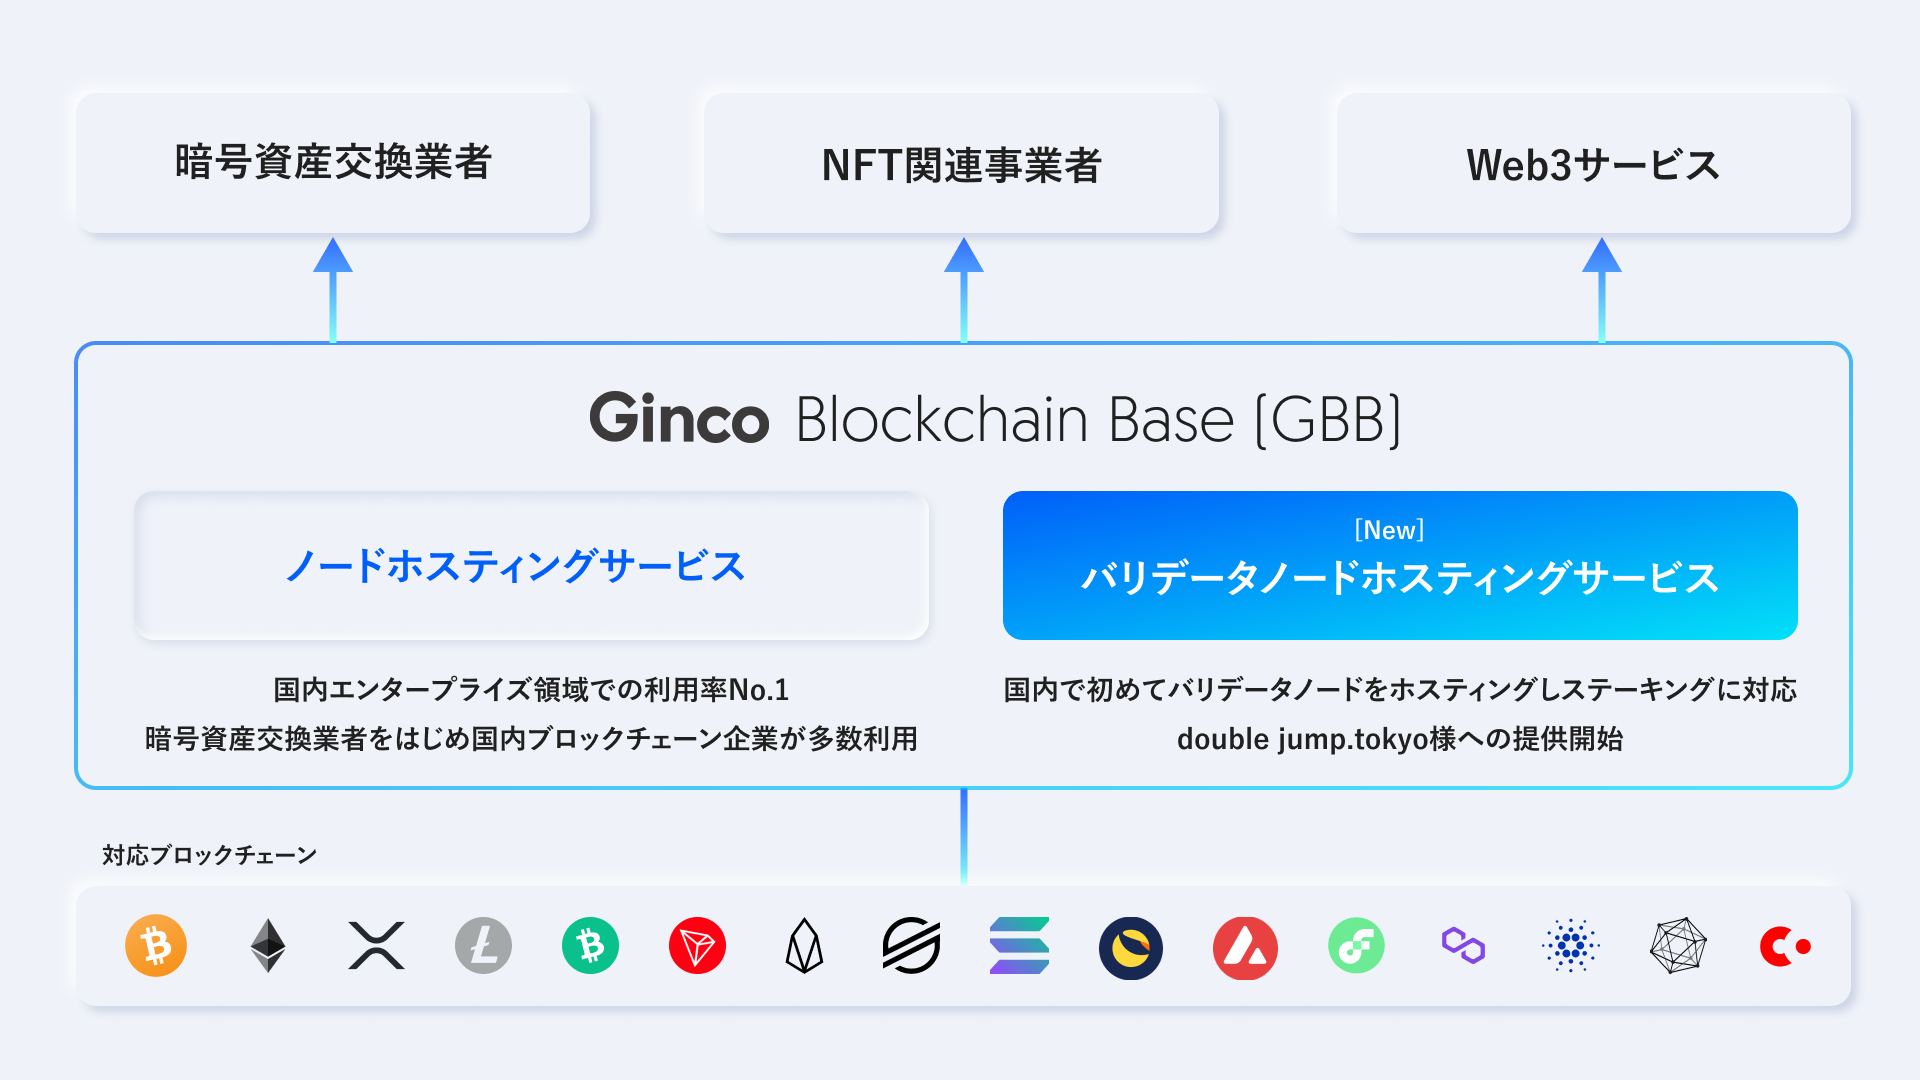 Ginco blockchain Base